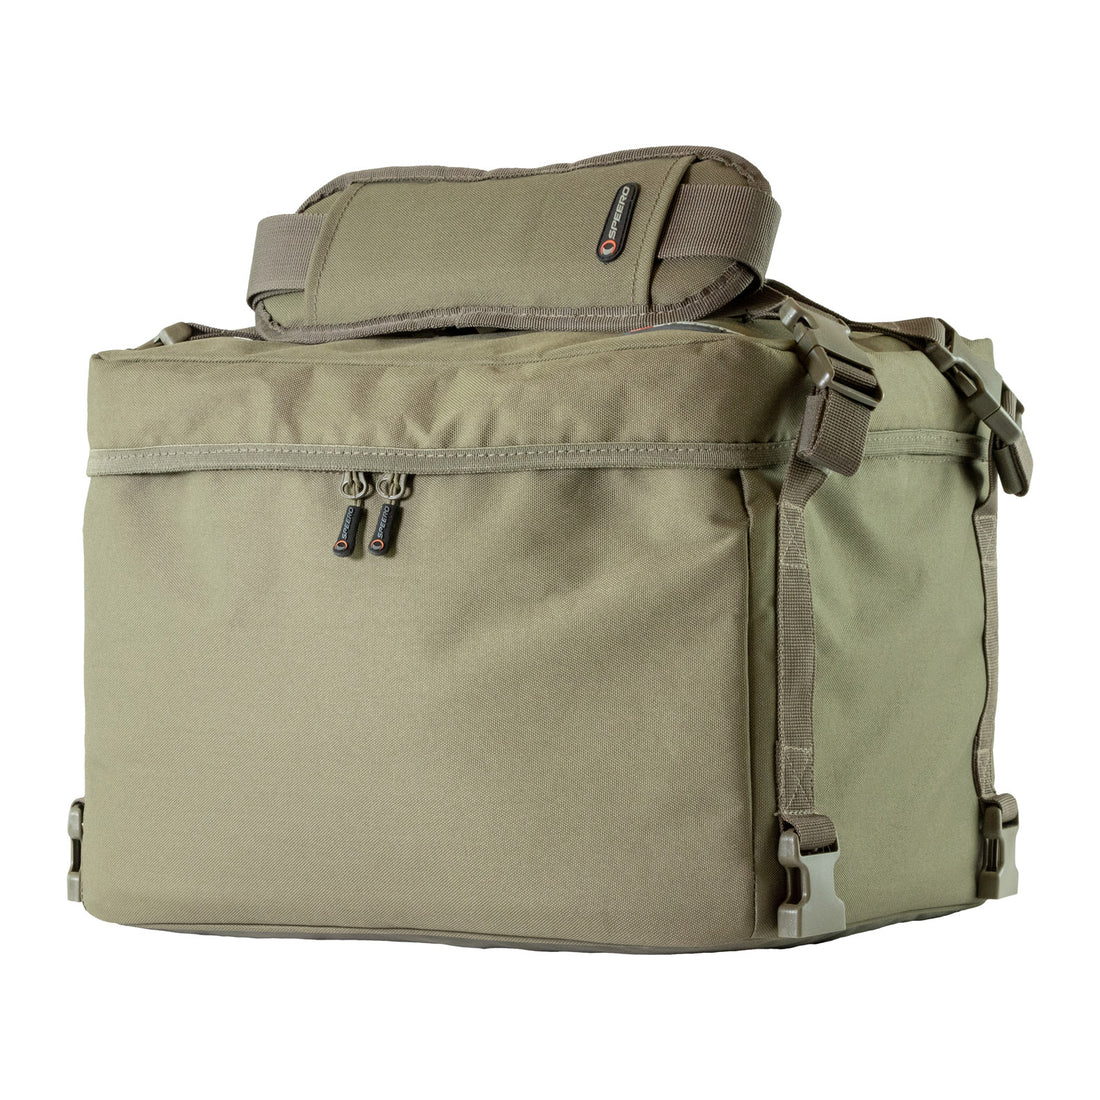 Speero Modular Standard Cool Bag